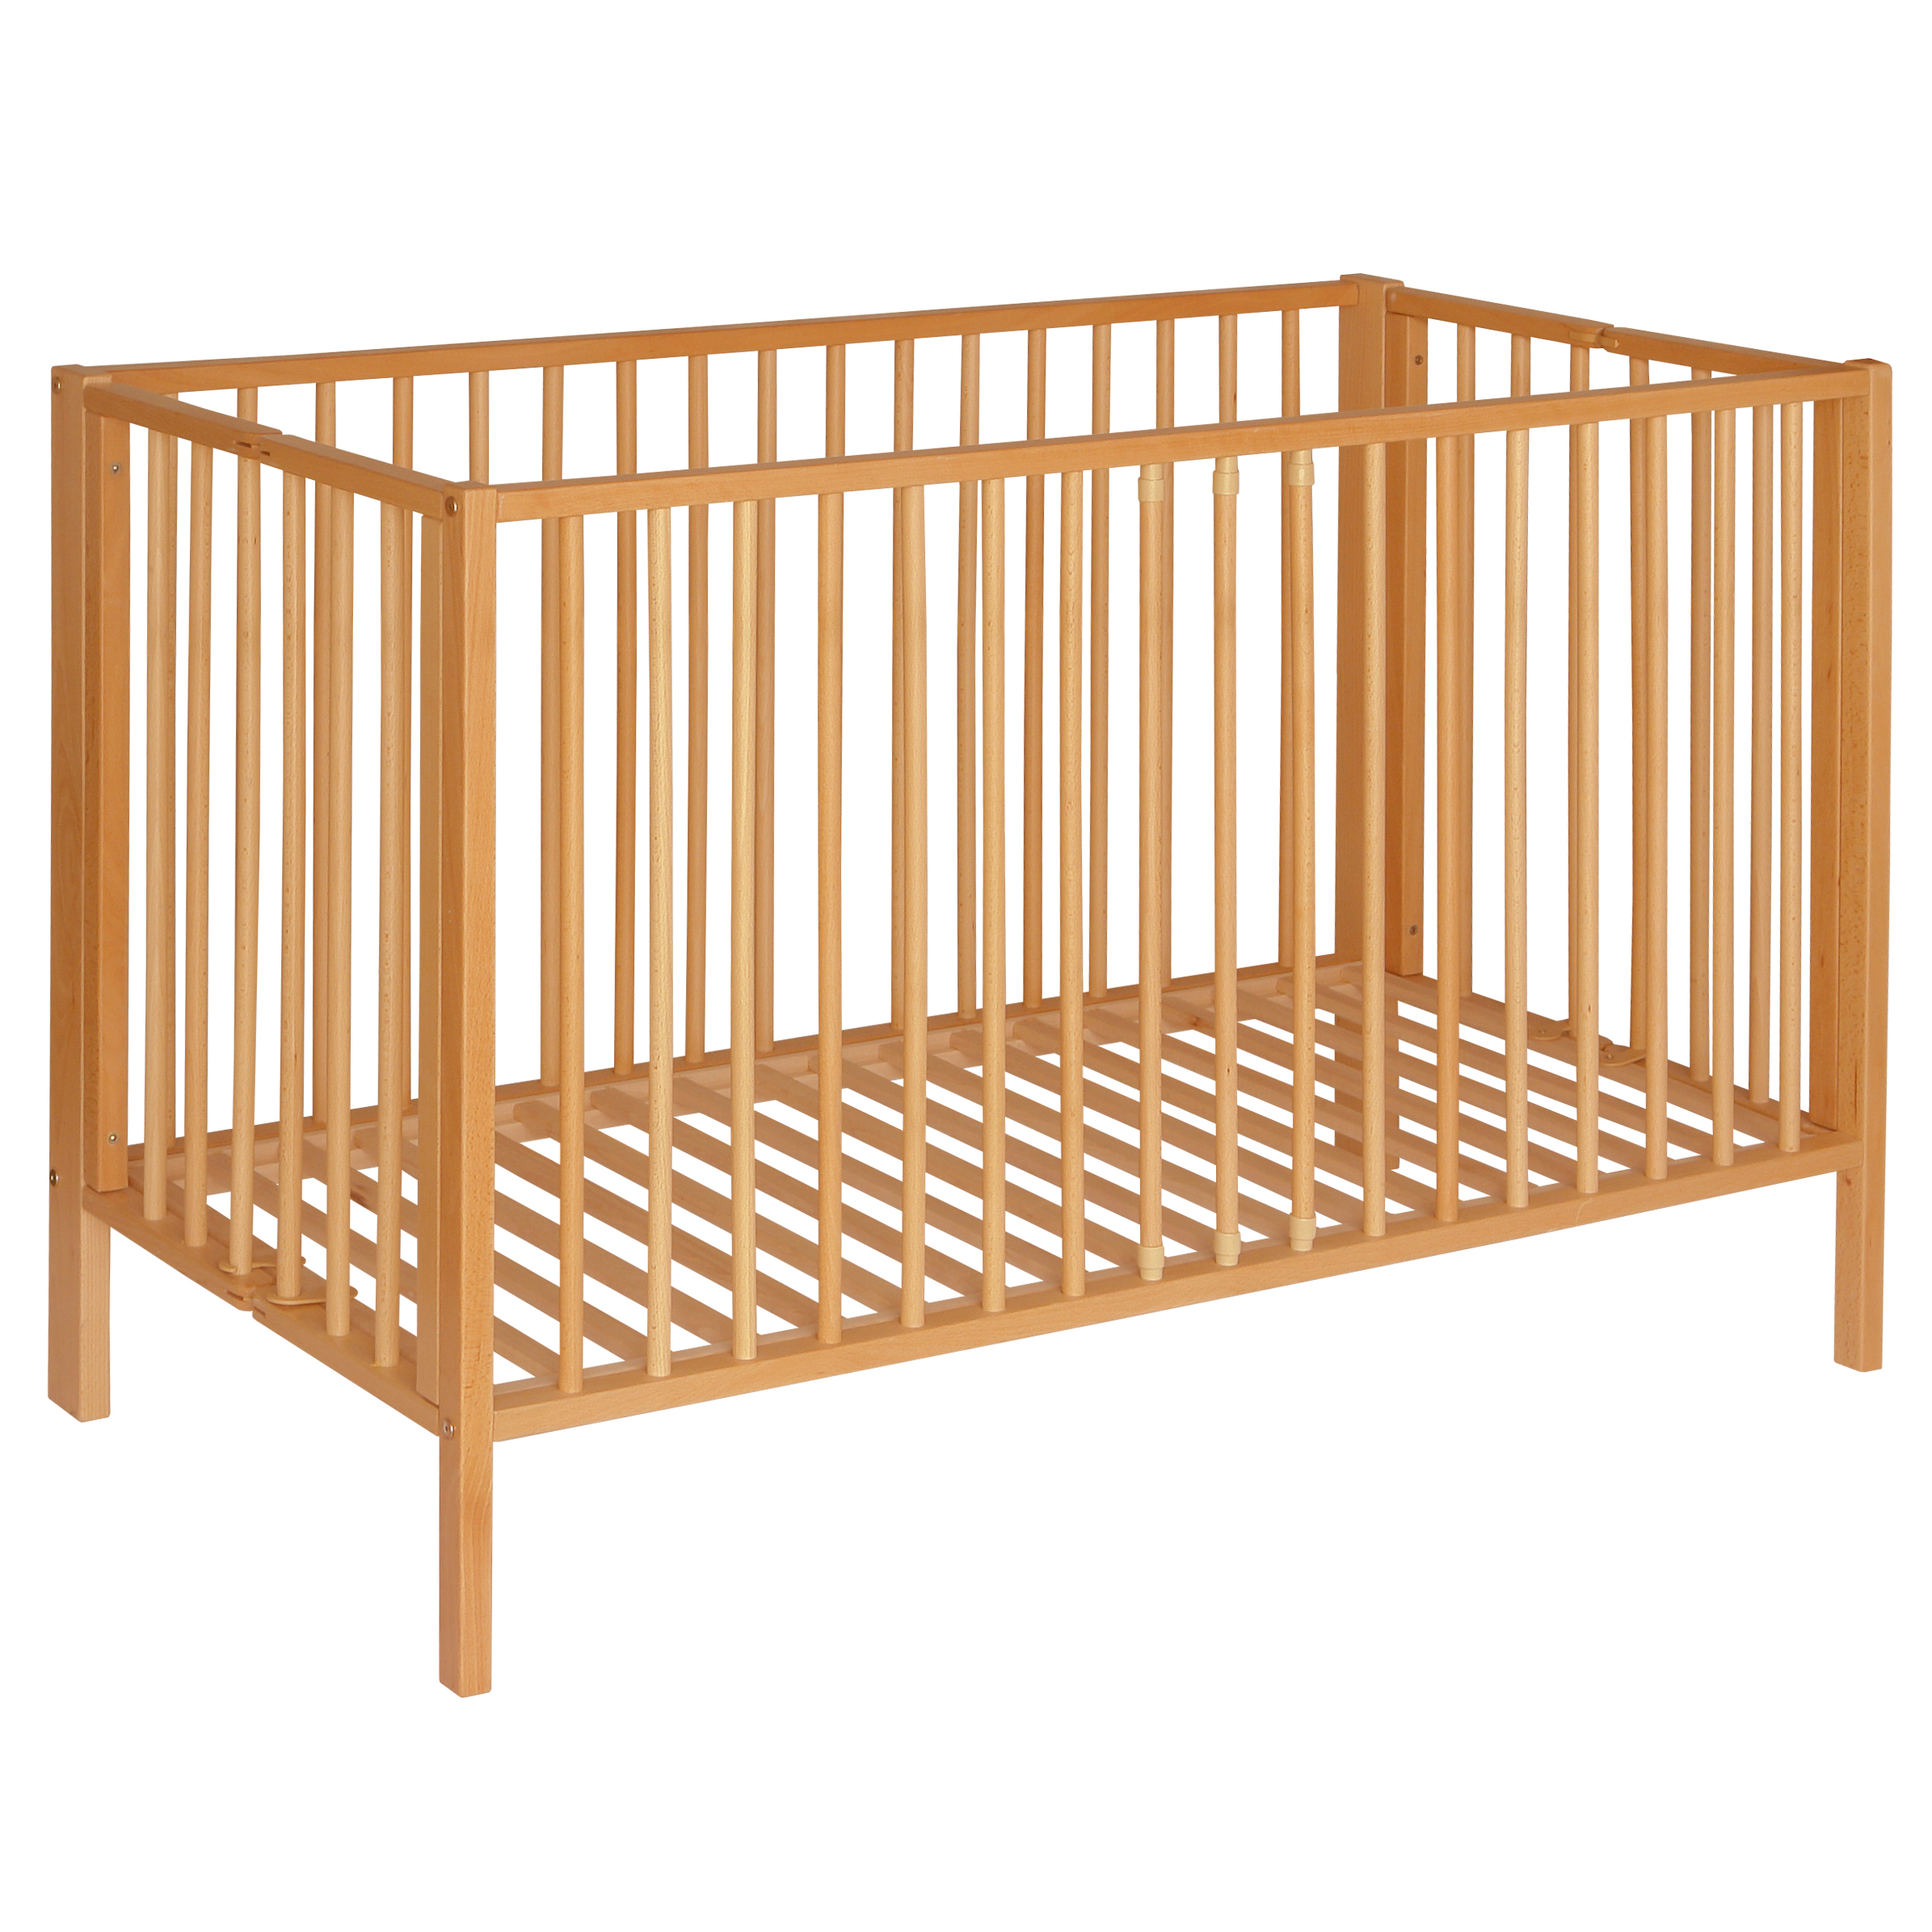 Wooden baby bed Skladane 120x60